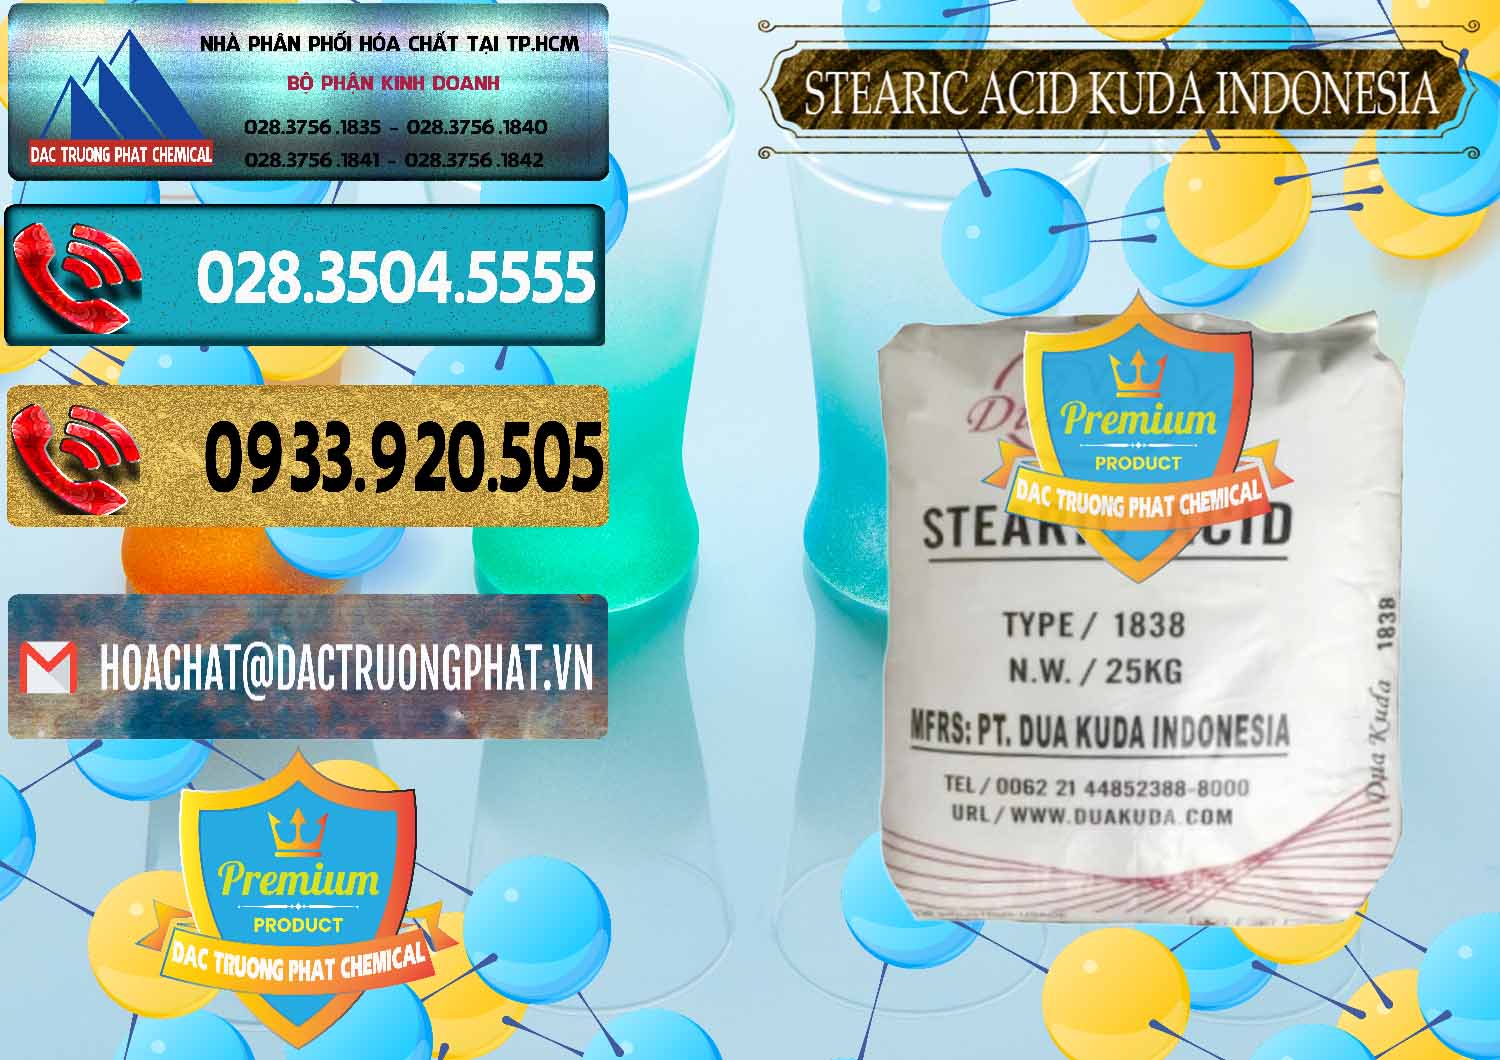 Nơi chuyên kinh doanh ( bán ) Axit Stearic - Stearic Acid Dua Kuda Indonesia - 0388 - Công ty cung cấp ( bán ) hóa chất tại TP.HCM - hoachatdetnhuom.com